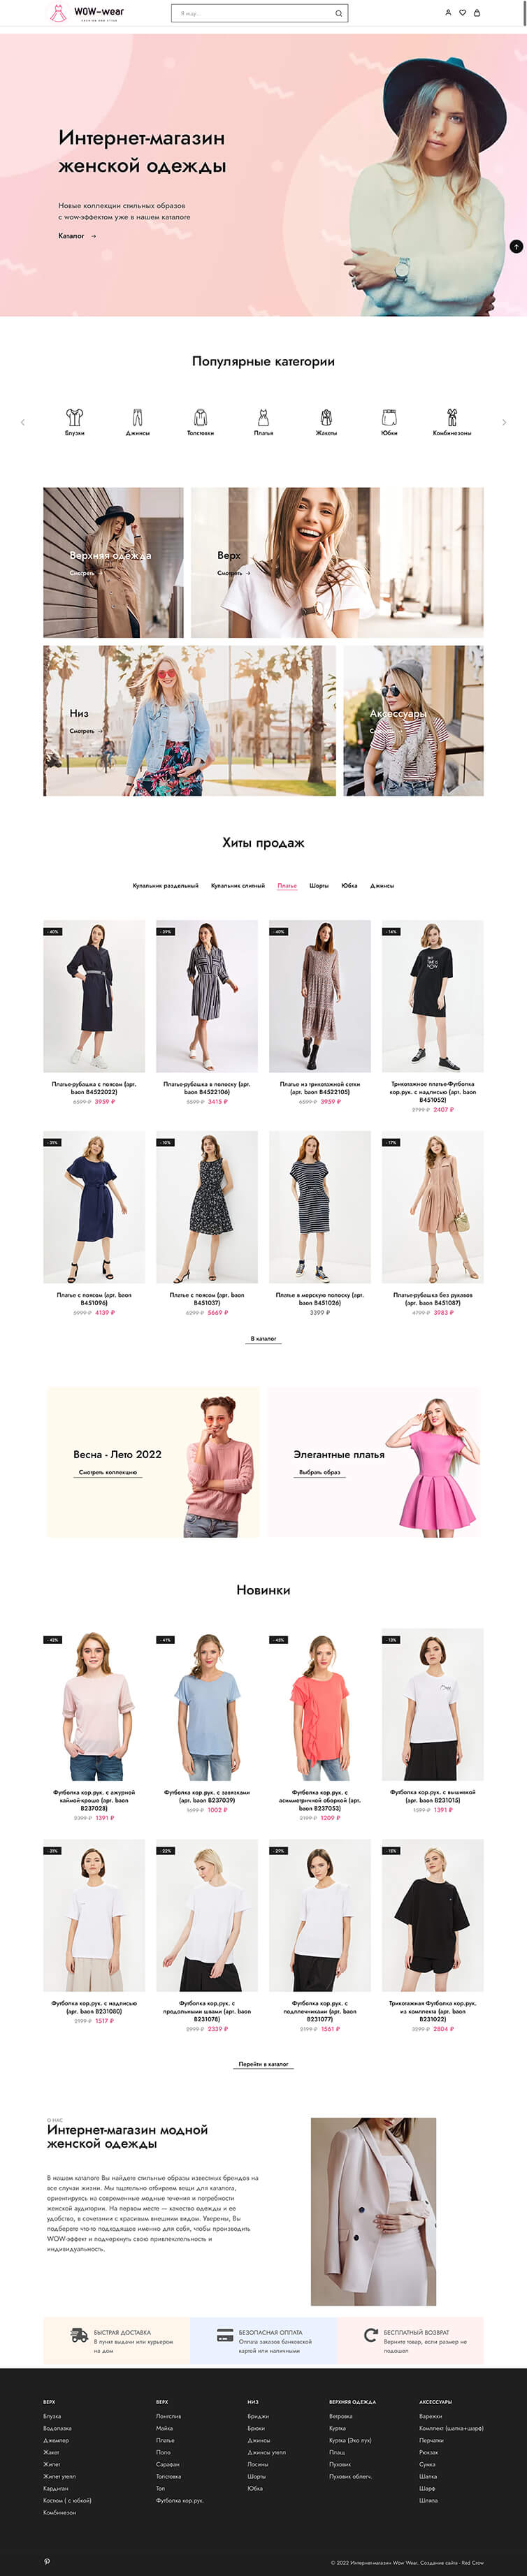 Разработка интернет-магазина женской одежды